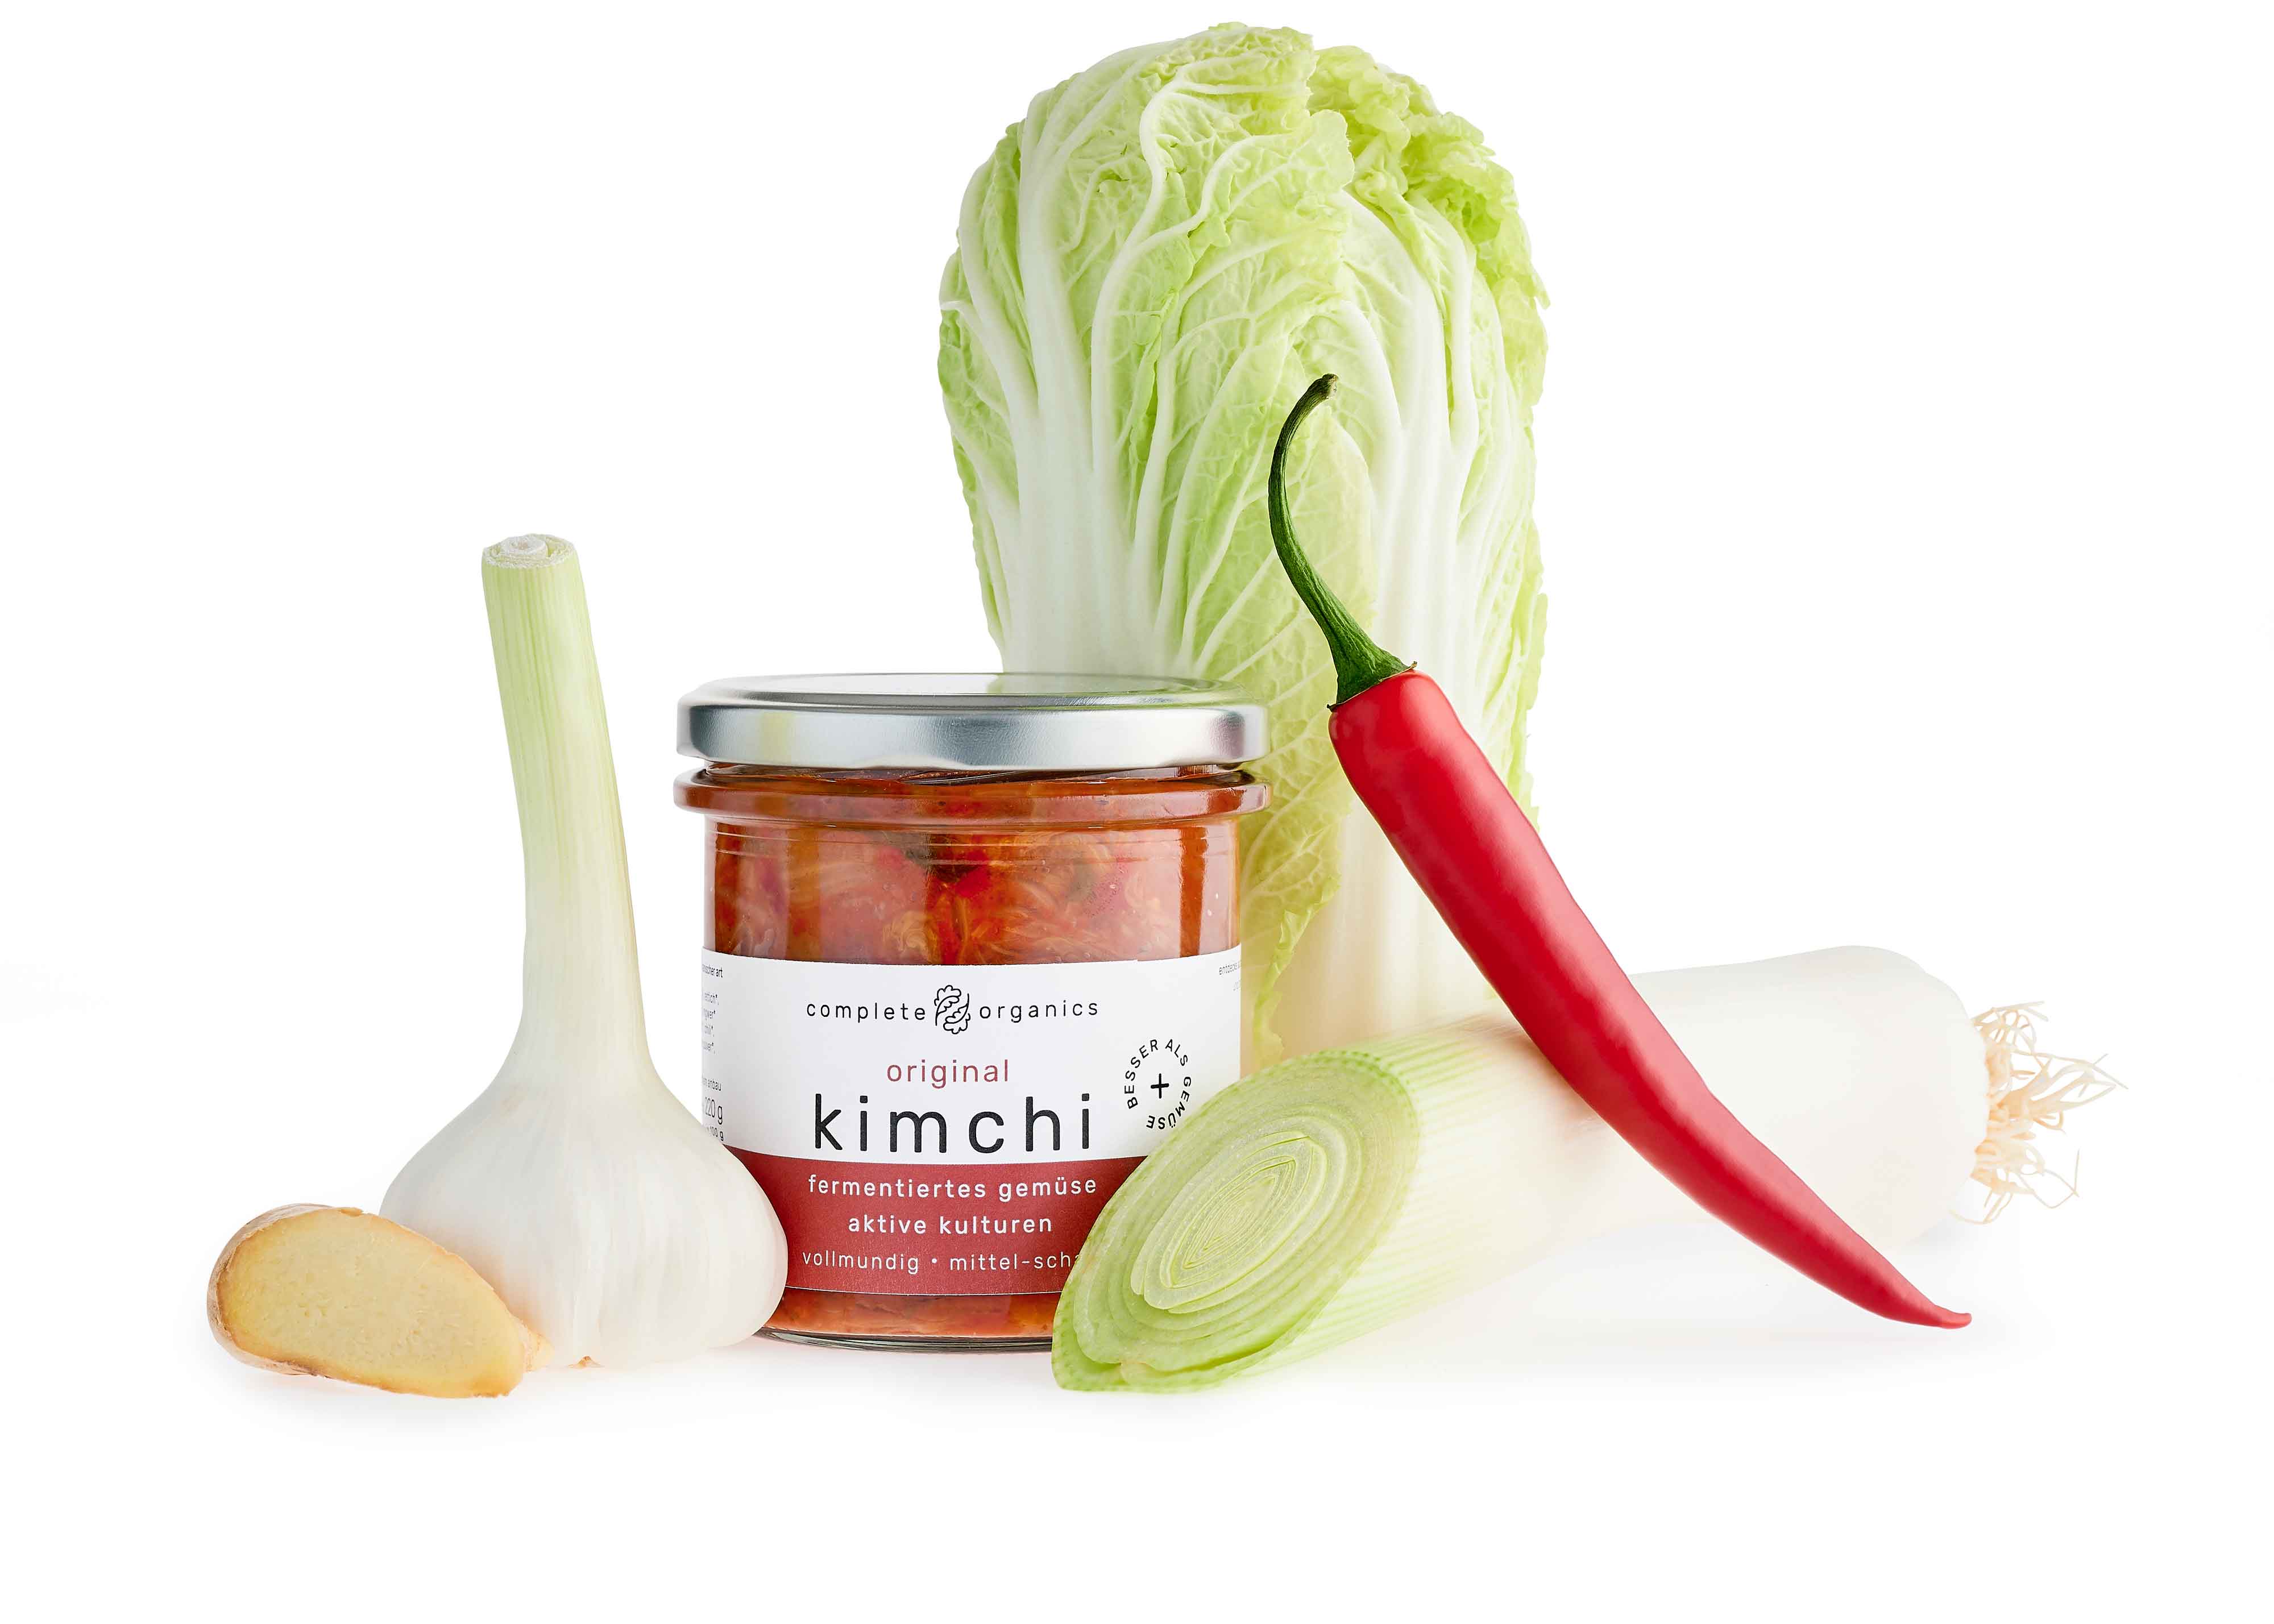 original kimchi